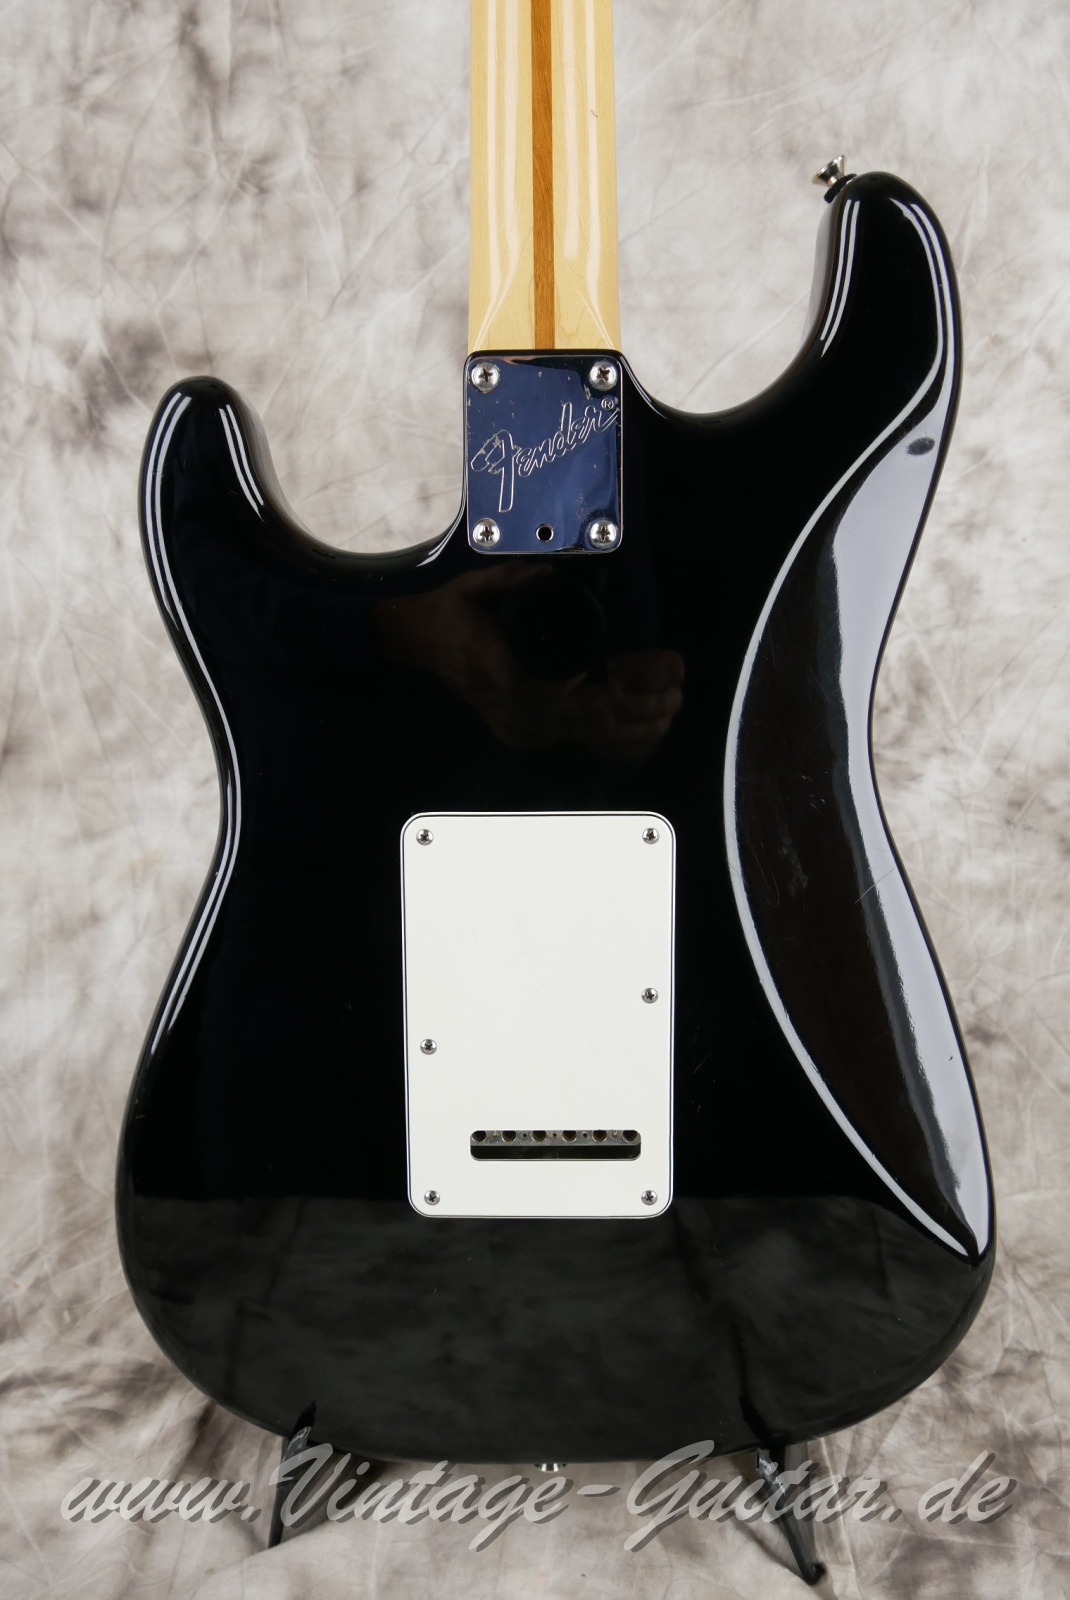 Fender-Stratocaster-American-Standard-1987-black-004.JPG